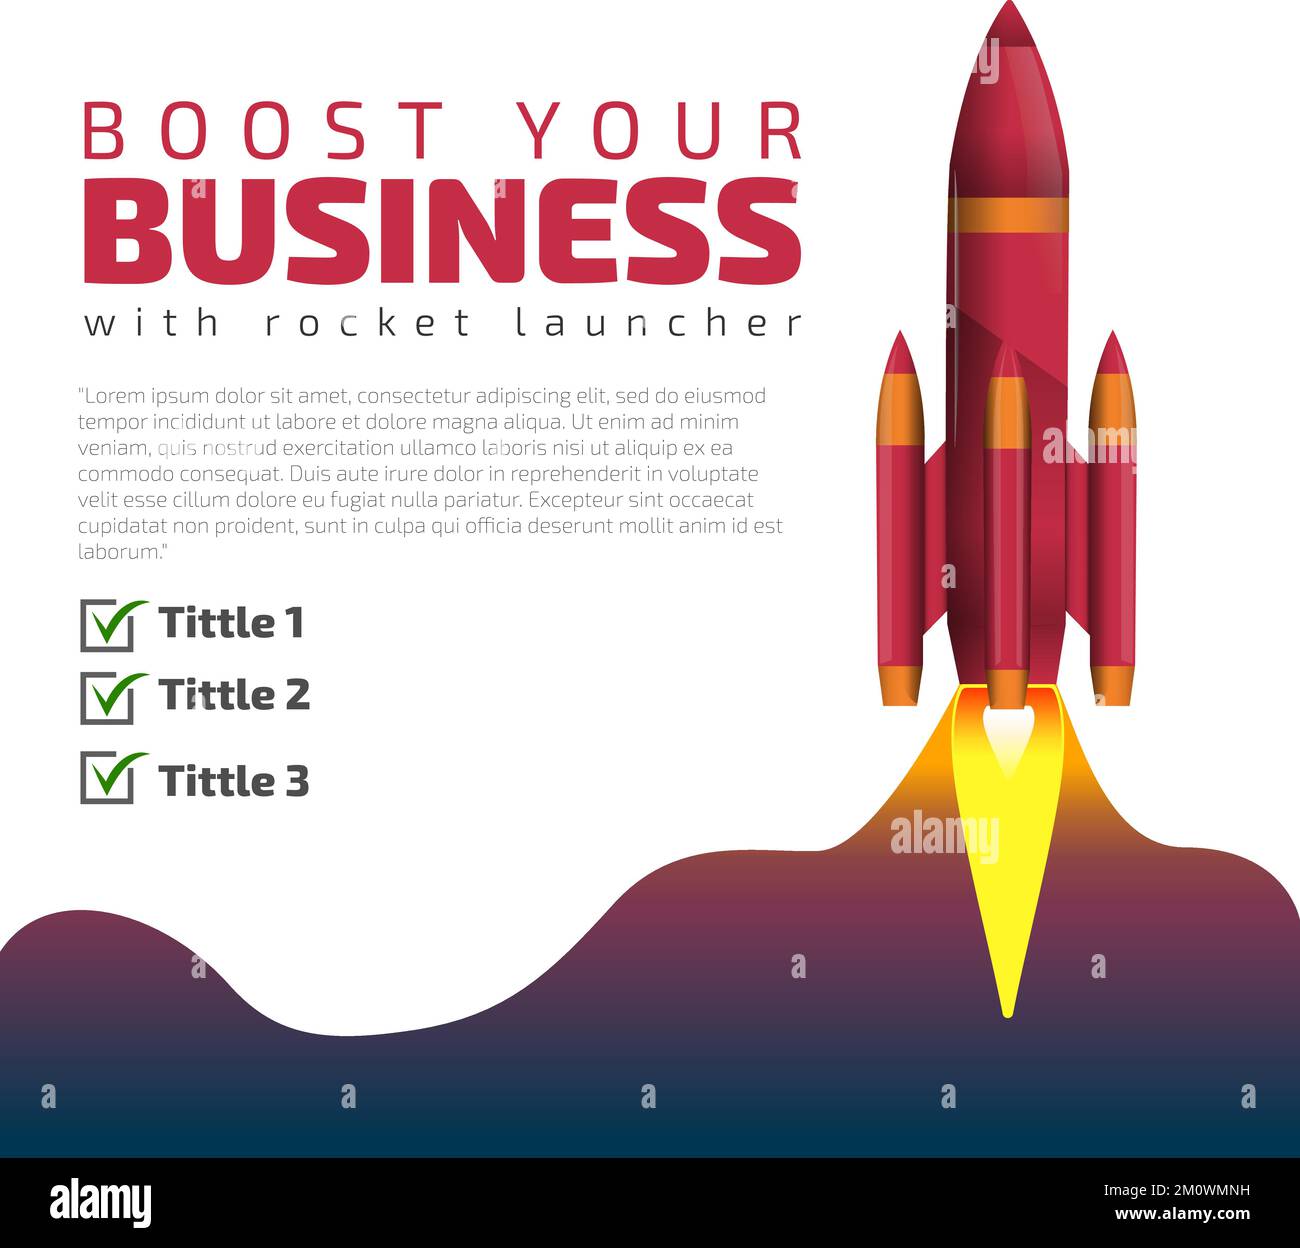 Potenziate il vostro poster di lancio del brand Rocket adatto per il marketing dei feed, il creatore di contenuti e il successo aziendale. Illustrazione Vettoriale